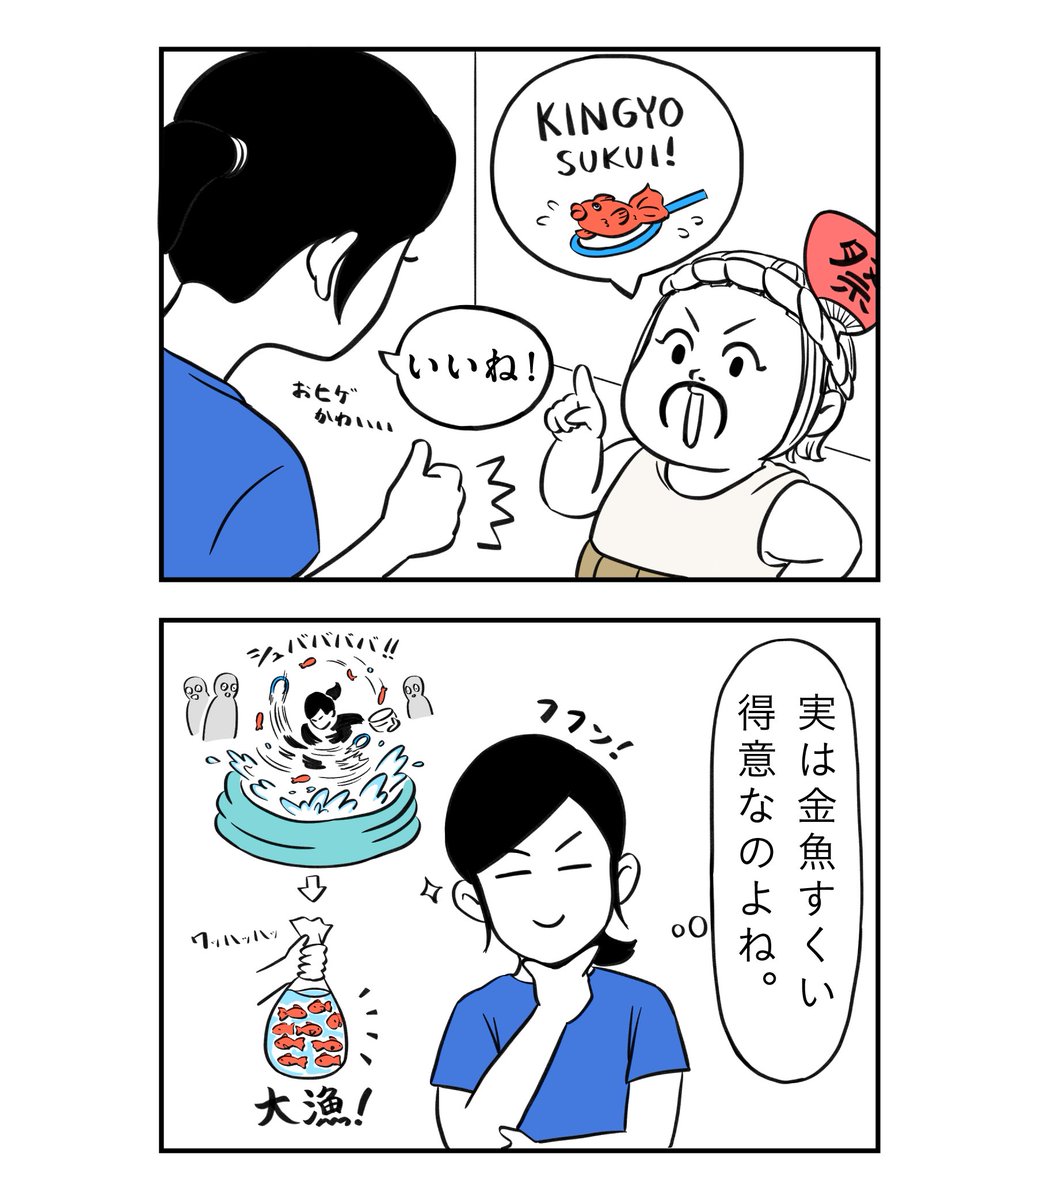 おうちで金魚すくい 1/2

#着ぐるみ家族
#漫画 